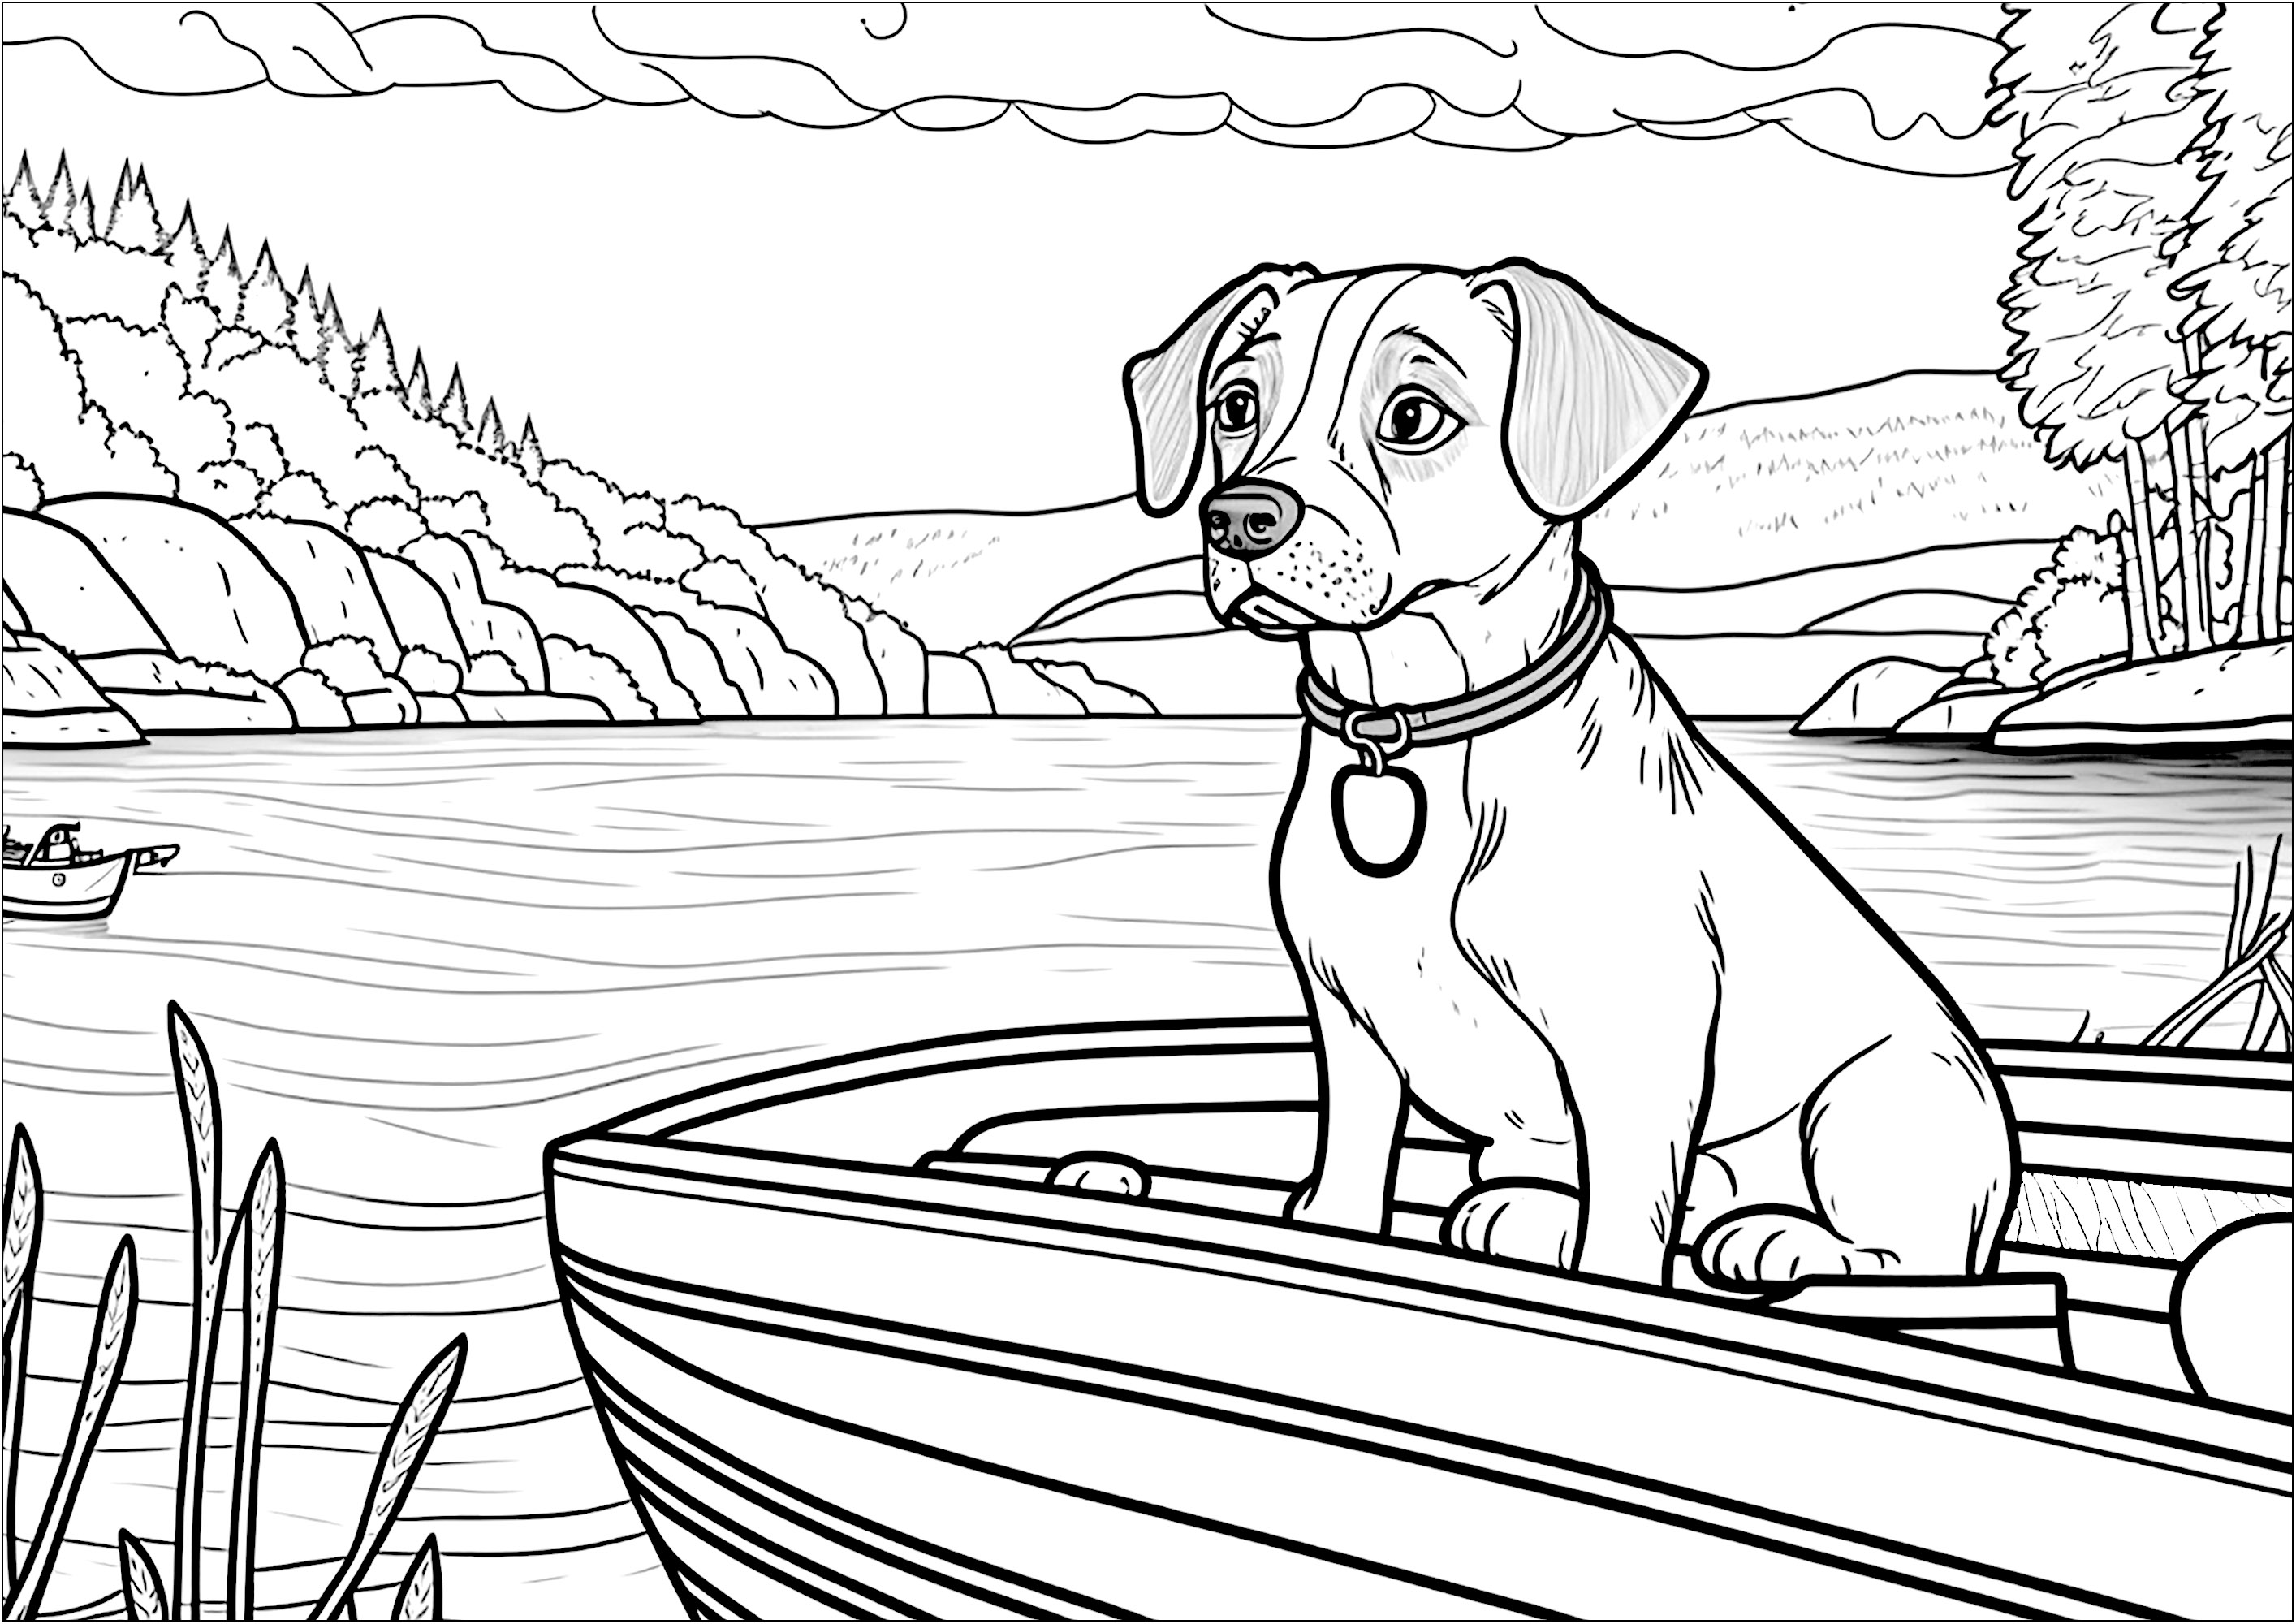 Perro en un barco. Este dibujo para colorear muestra a un perro en un barco, navegando por un lago.El paisaje de fondo es precioso: montañas, bosques...